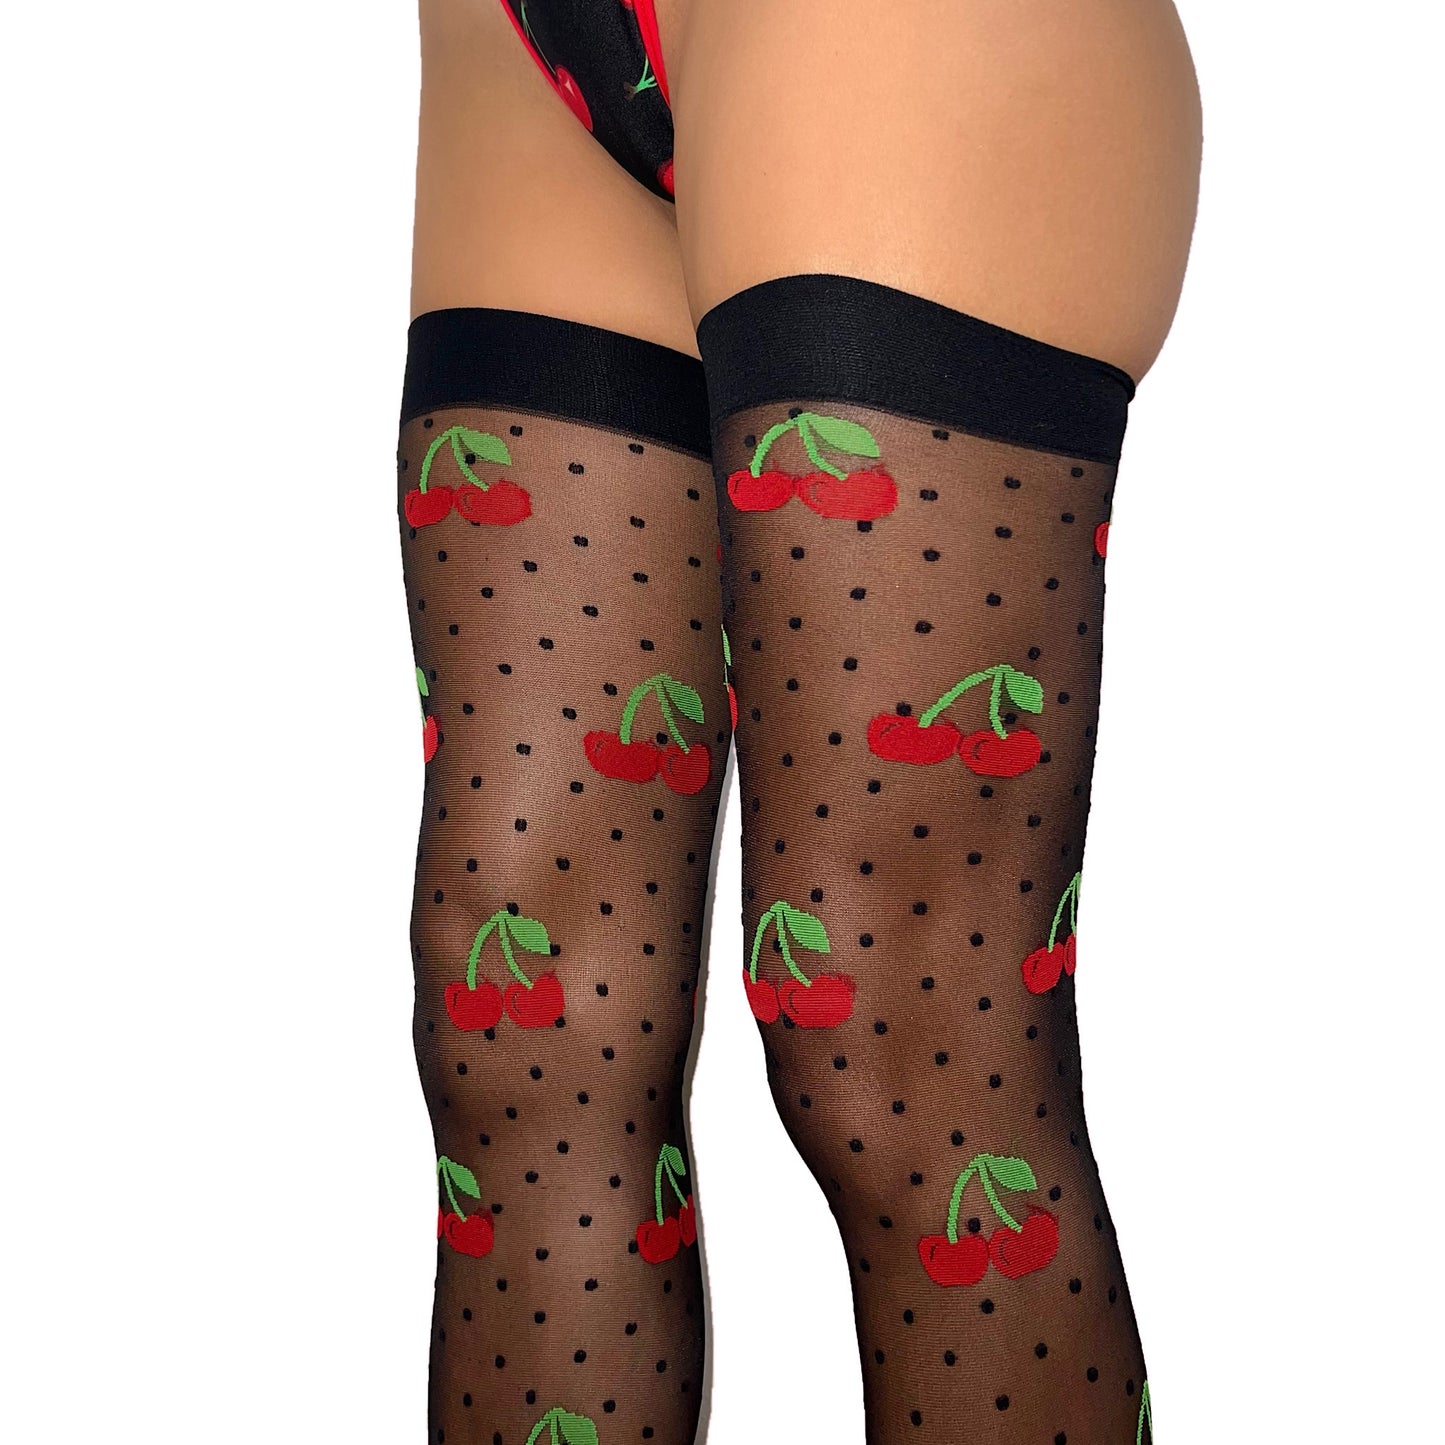 Thigh High Stockings: Maraschino Cherries